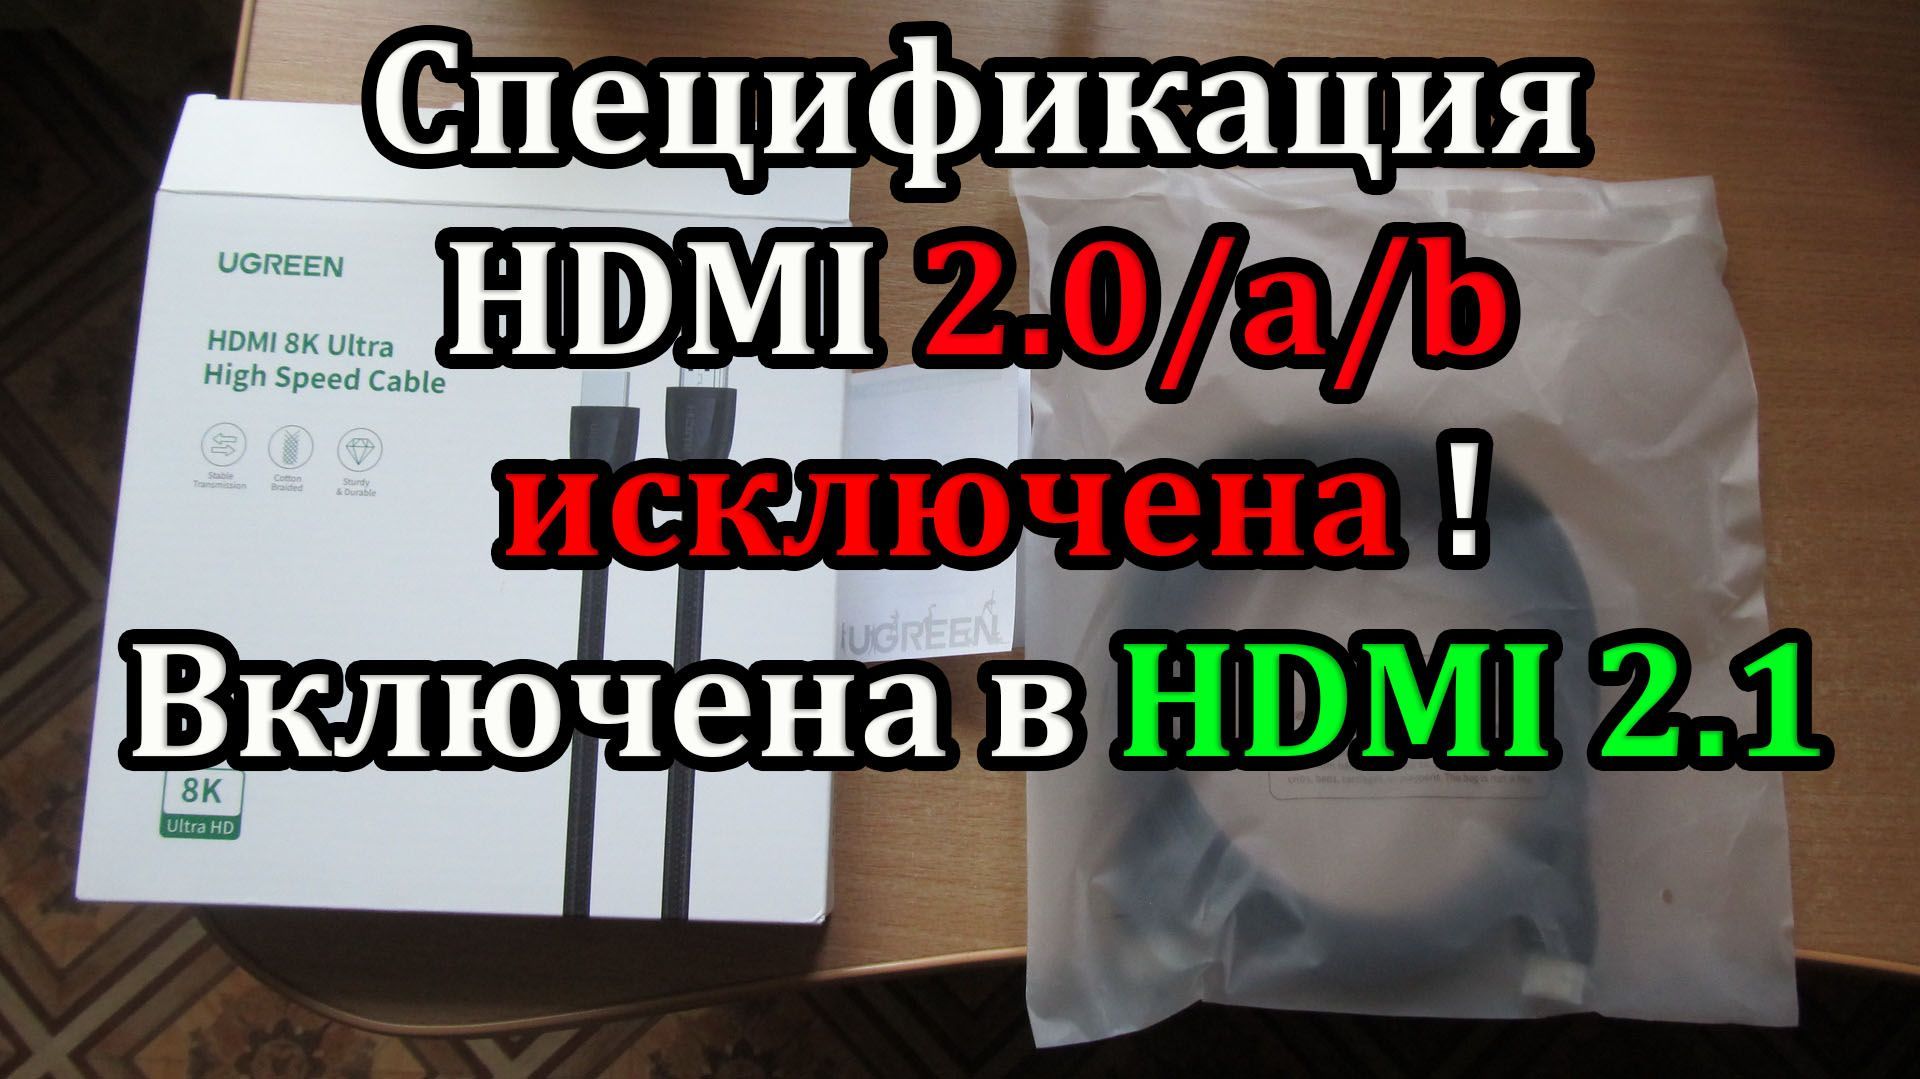 Спецификация кабеля HDMI 2.1 теперь включает в себя HDMI 2.0/a/b. Как правильно выбрать кабель?!